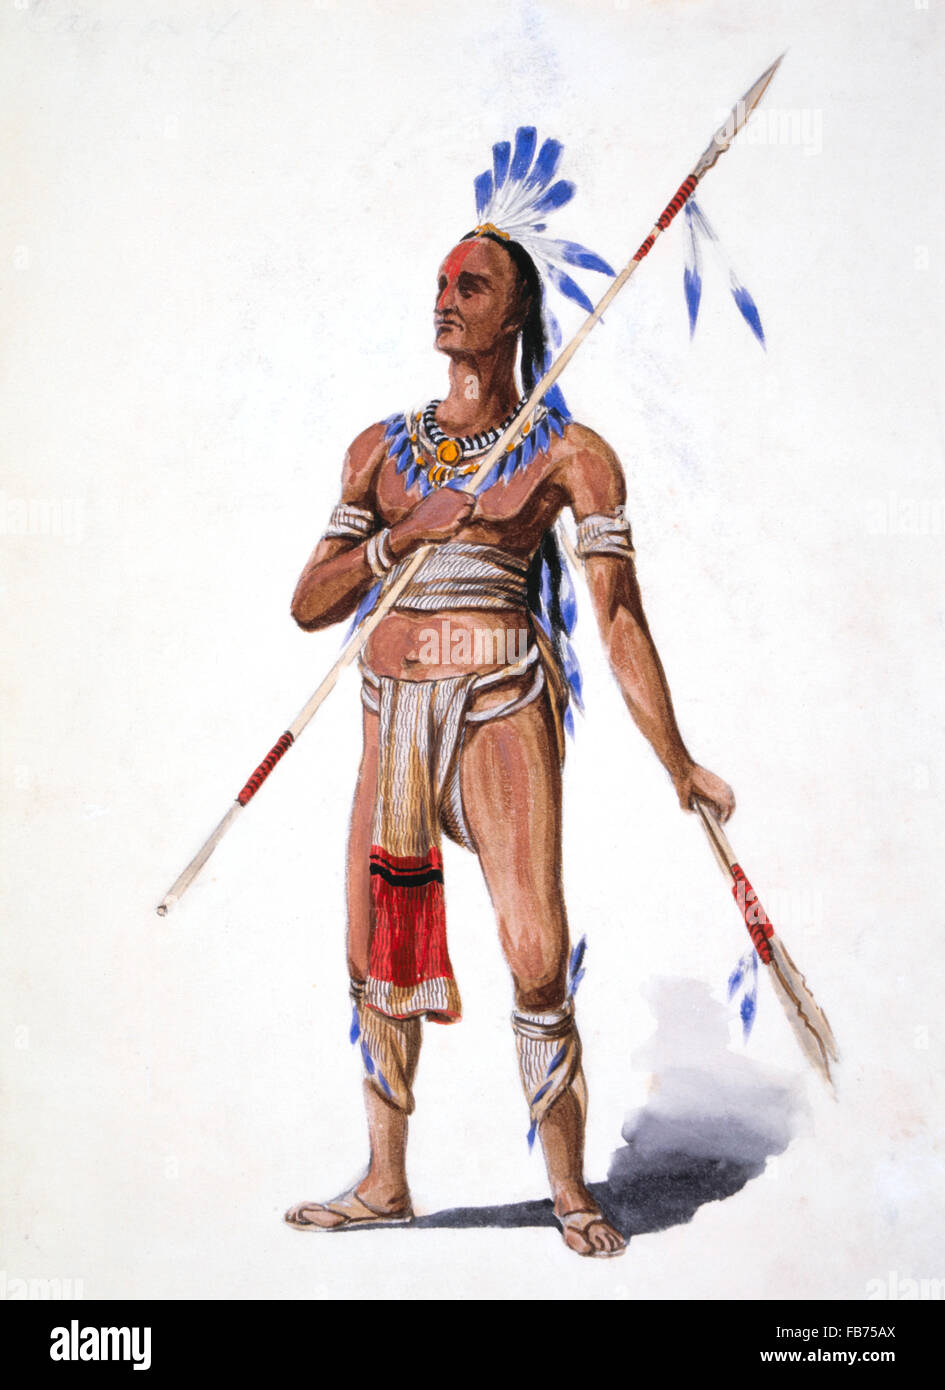 Indianischer Krieger von William L. Wells für 1893 Columbian Exposition Pageant, Chicago, Illinois, USA, Aquarell, 1892 Stockfoto